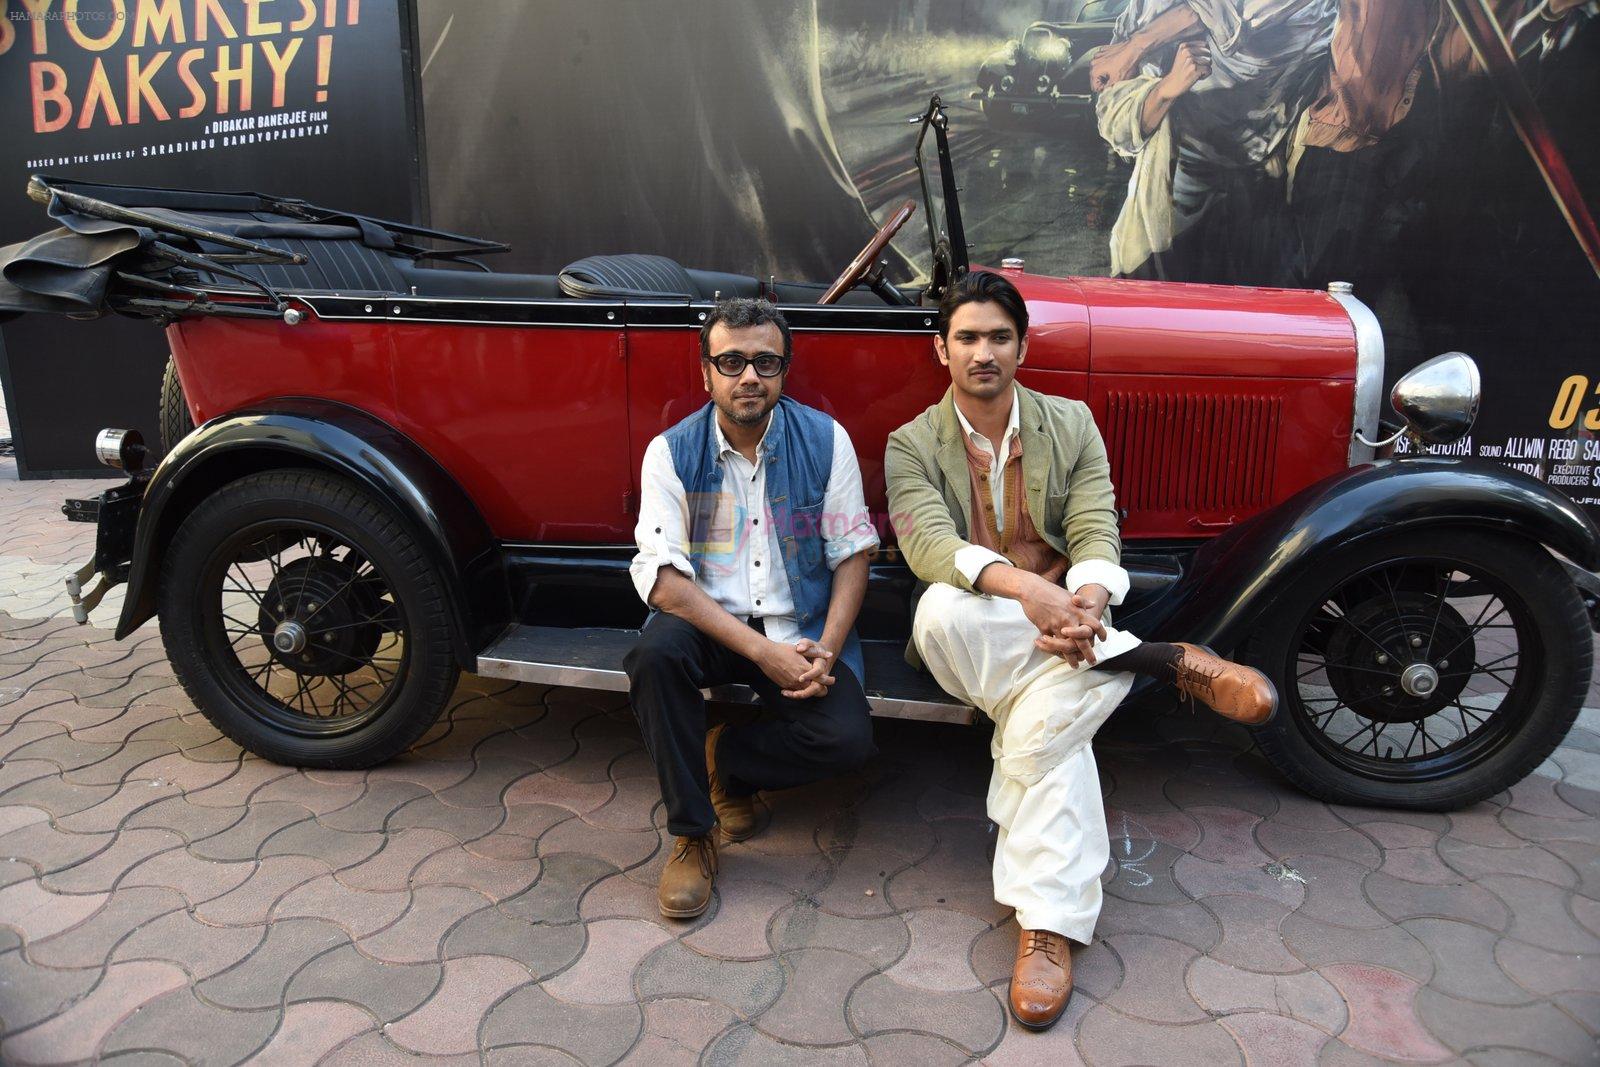 Sushant Singh Rajput, Dibakar Banerjee at the Launch of Detective Byomkesh Bakshy 2nd Trailer on 9th March 2015